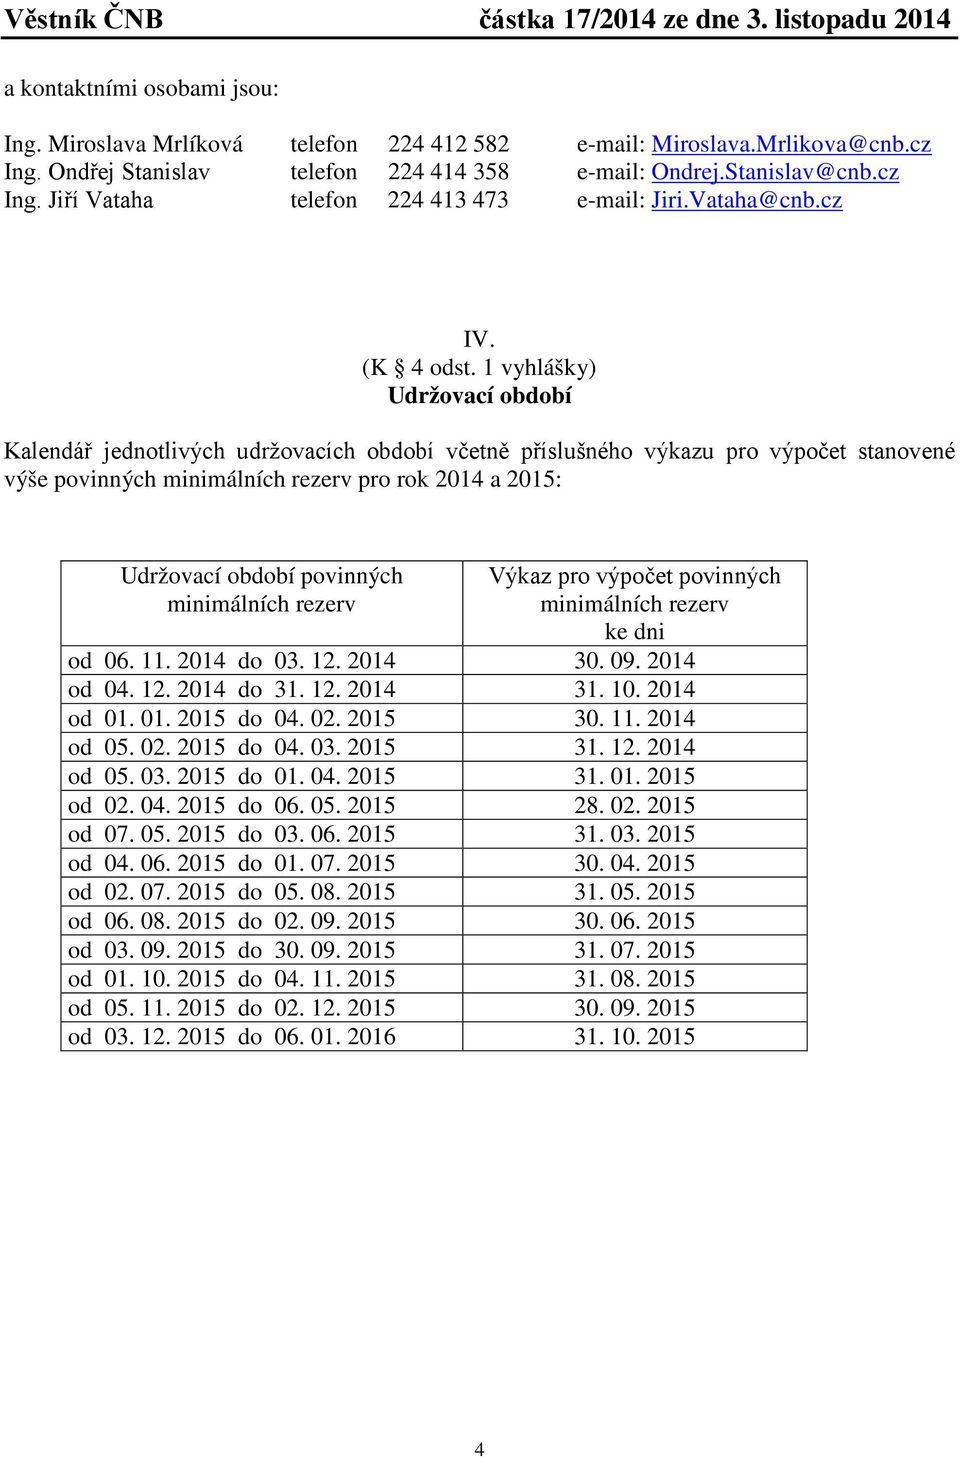 1 vyhlášky) Udržovací období Kalendář jednotlivých udržovacích období včetně příslušného výkazu pro výpočet stanovené výše povinných minimálních rezerv pro rok 2014 a 2015: Udržovací období povinných